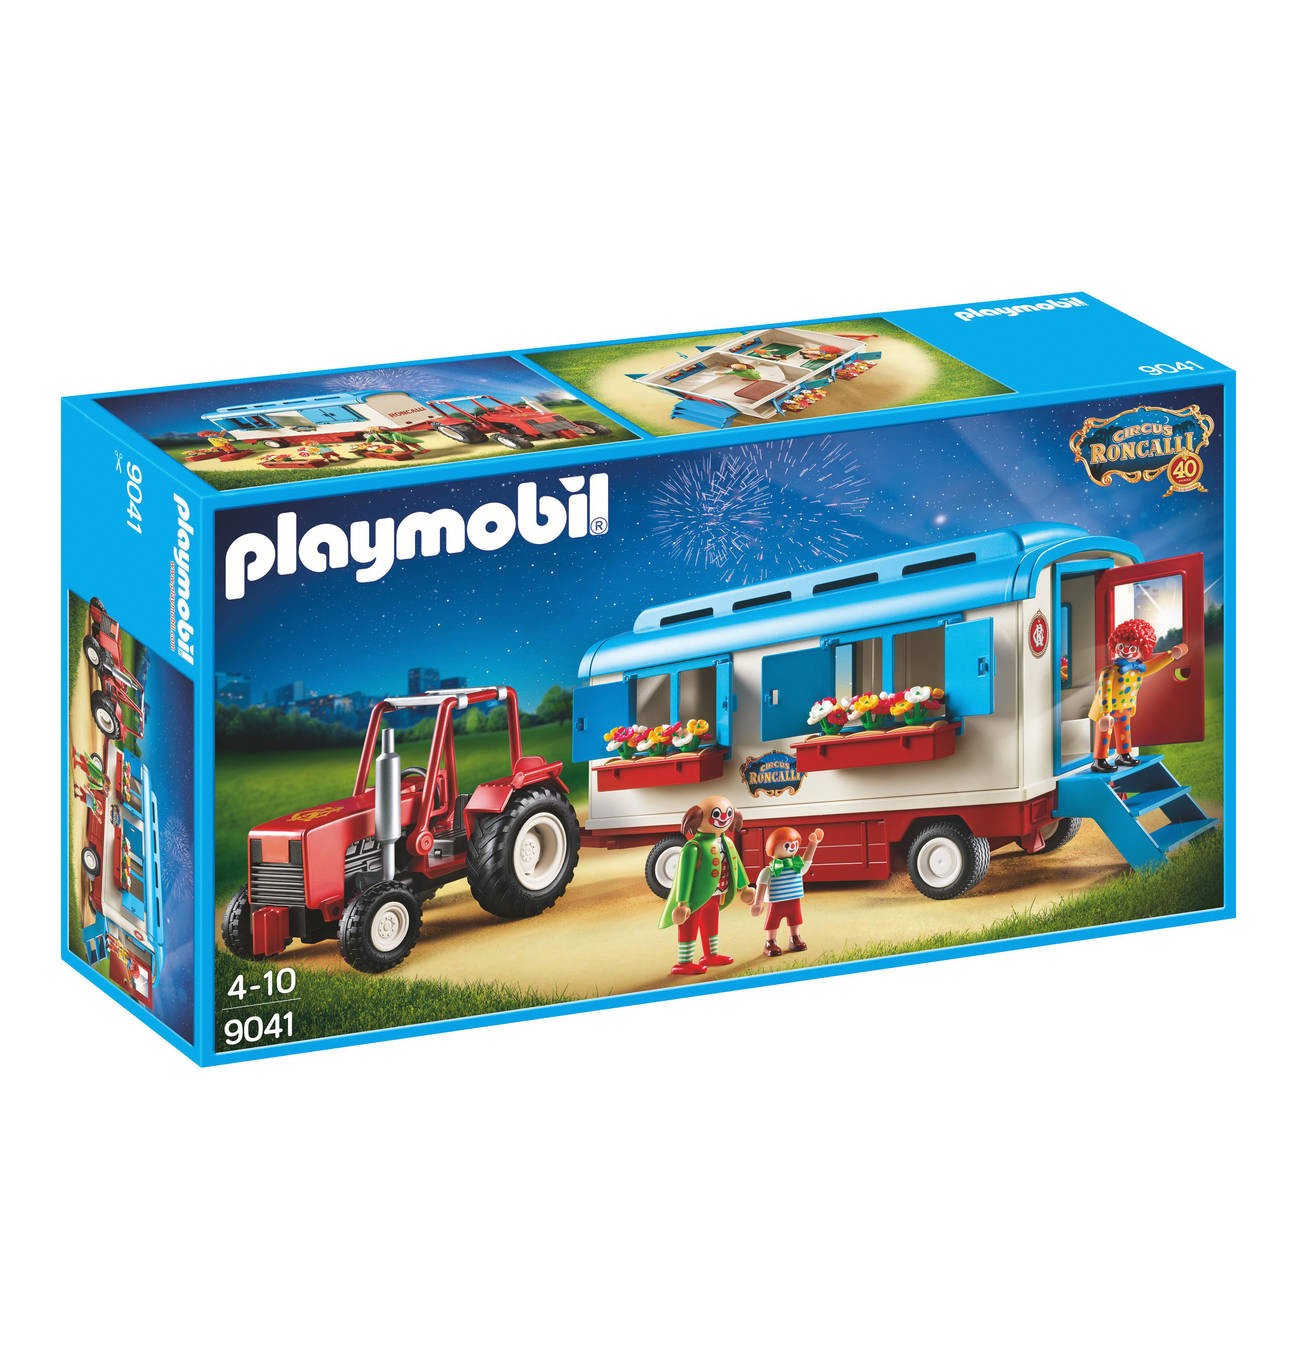 9041 tracteur avec caravane - circus Roncalli - Playmobil - Playmobileros -  Tienda de Playmobil Nuevo y Ocasión